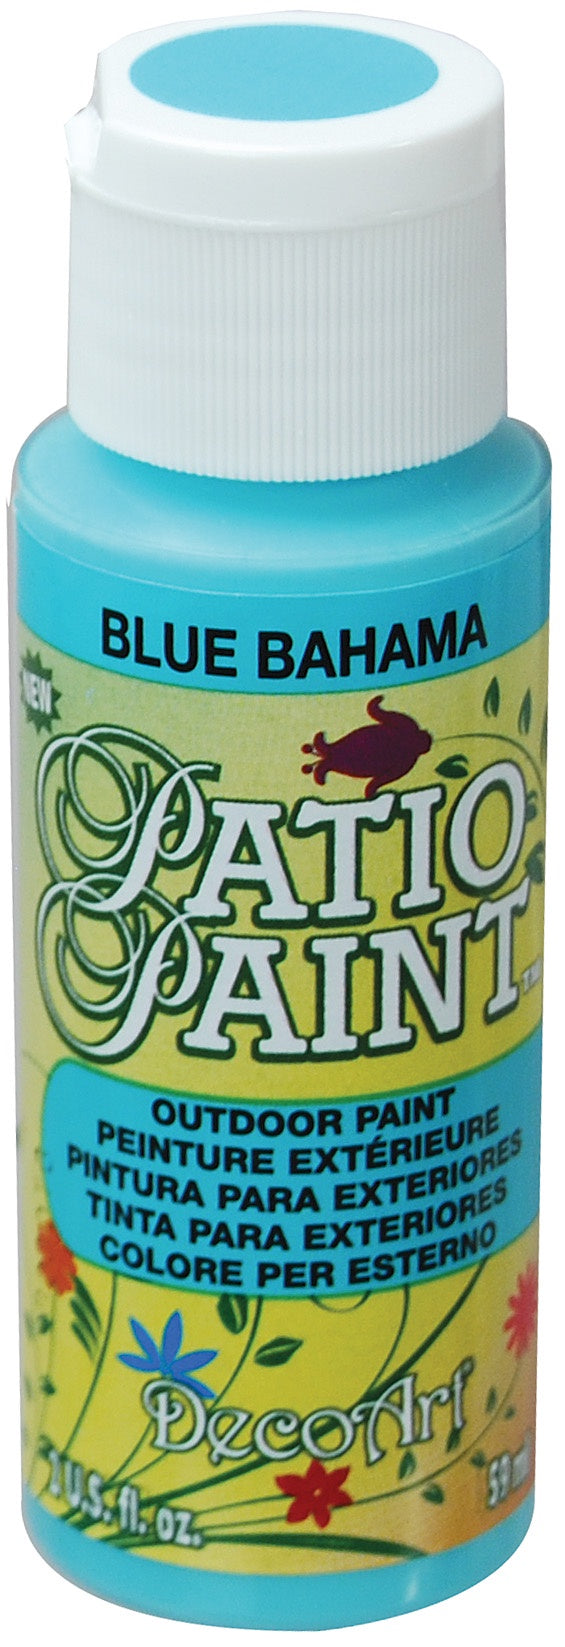 Deco Art Patio Paint 2oz - Blue Bahama